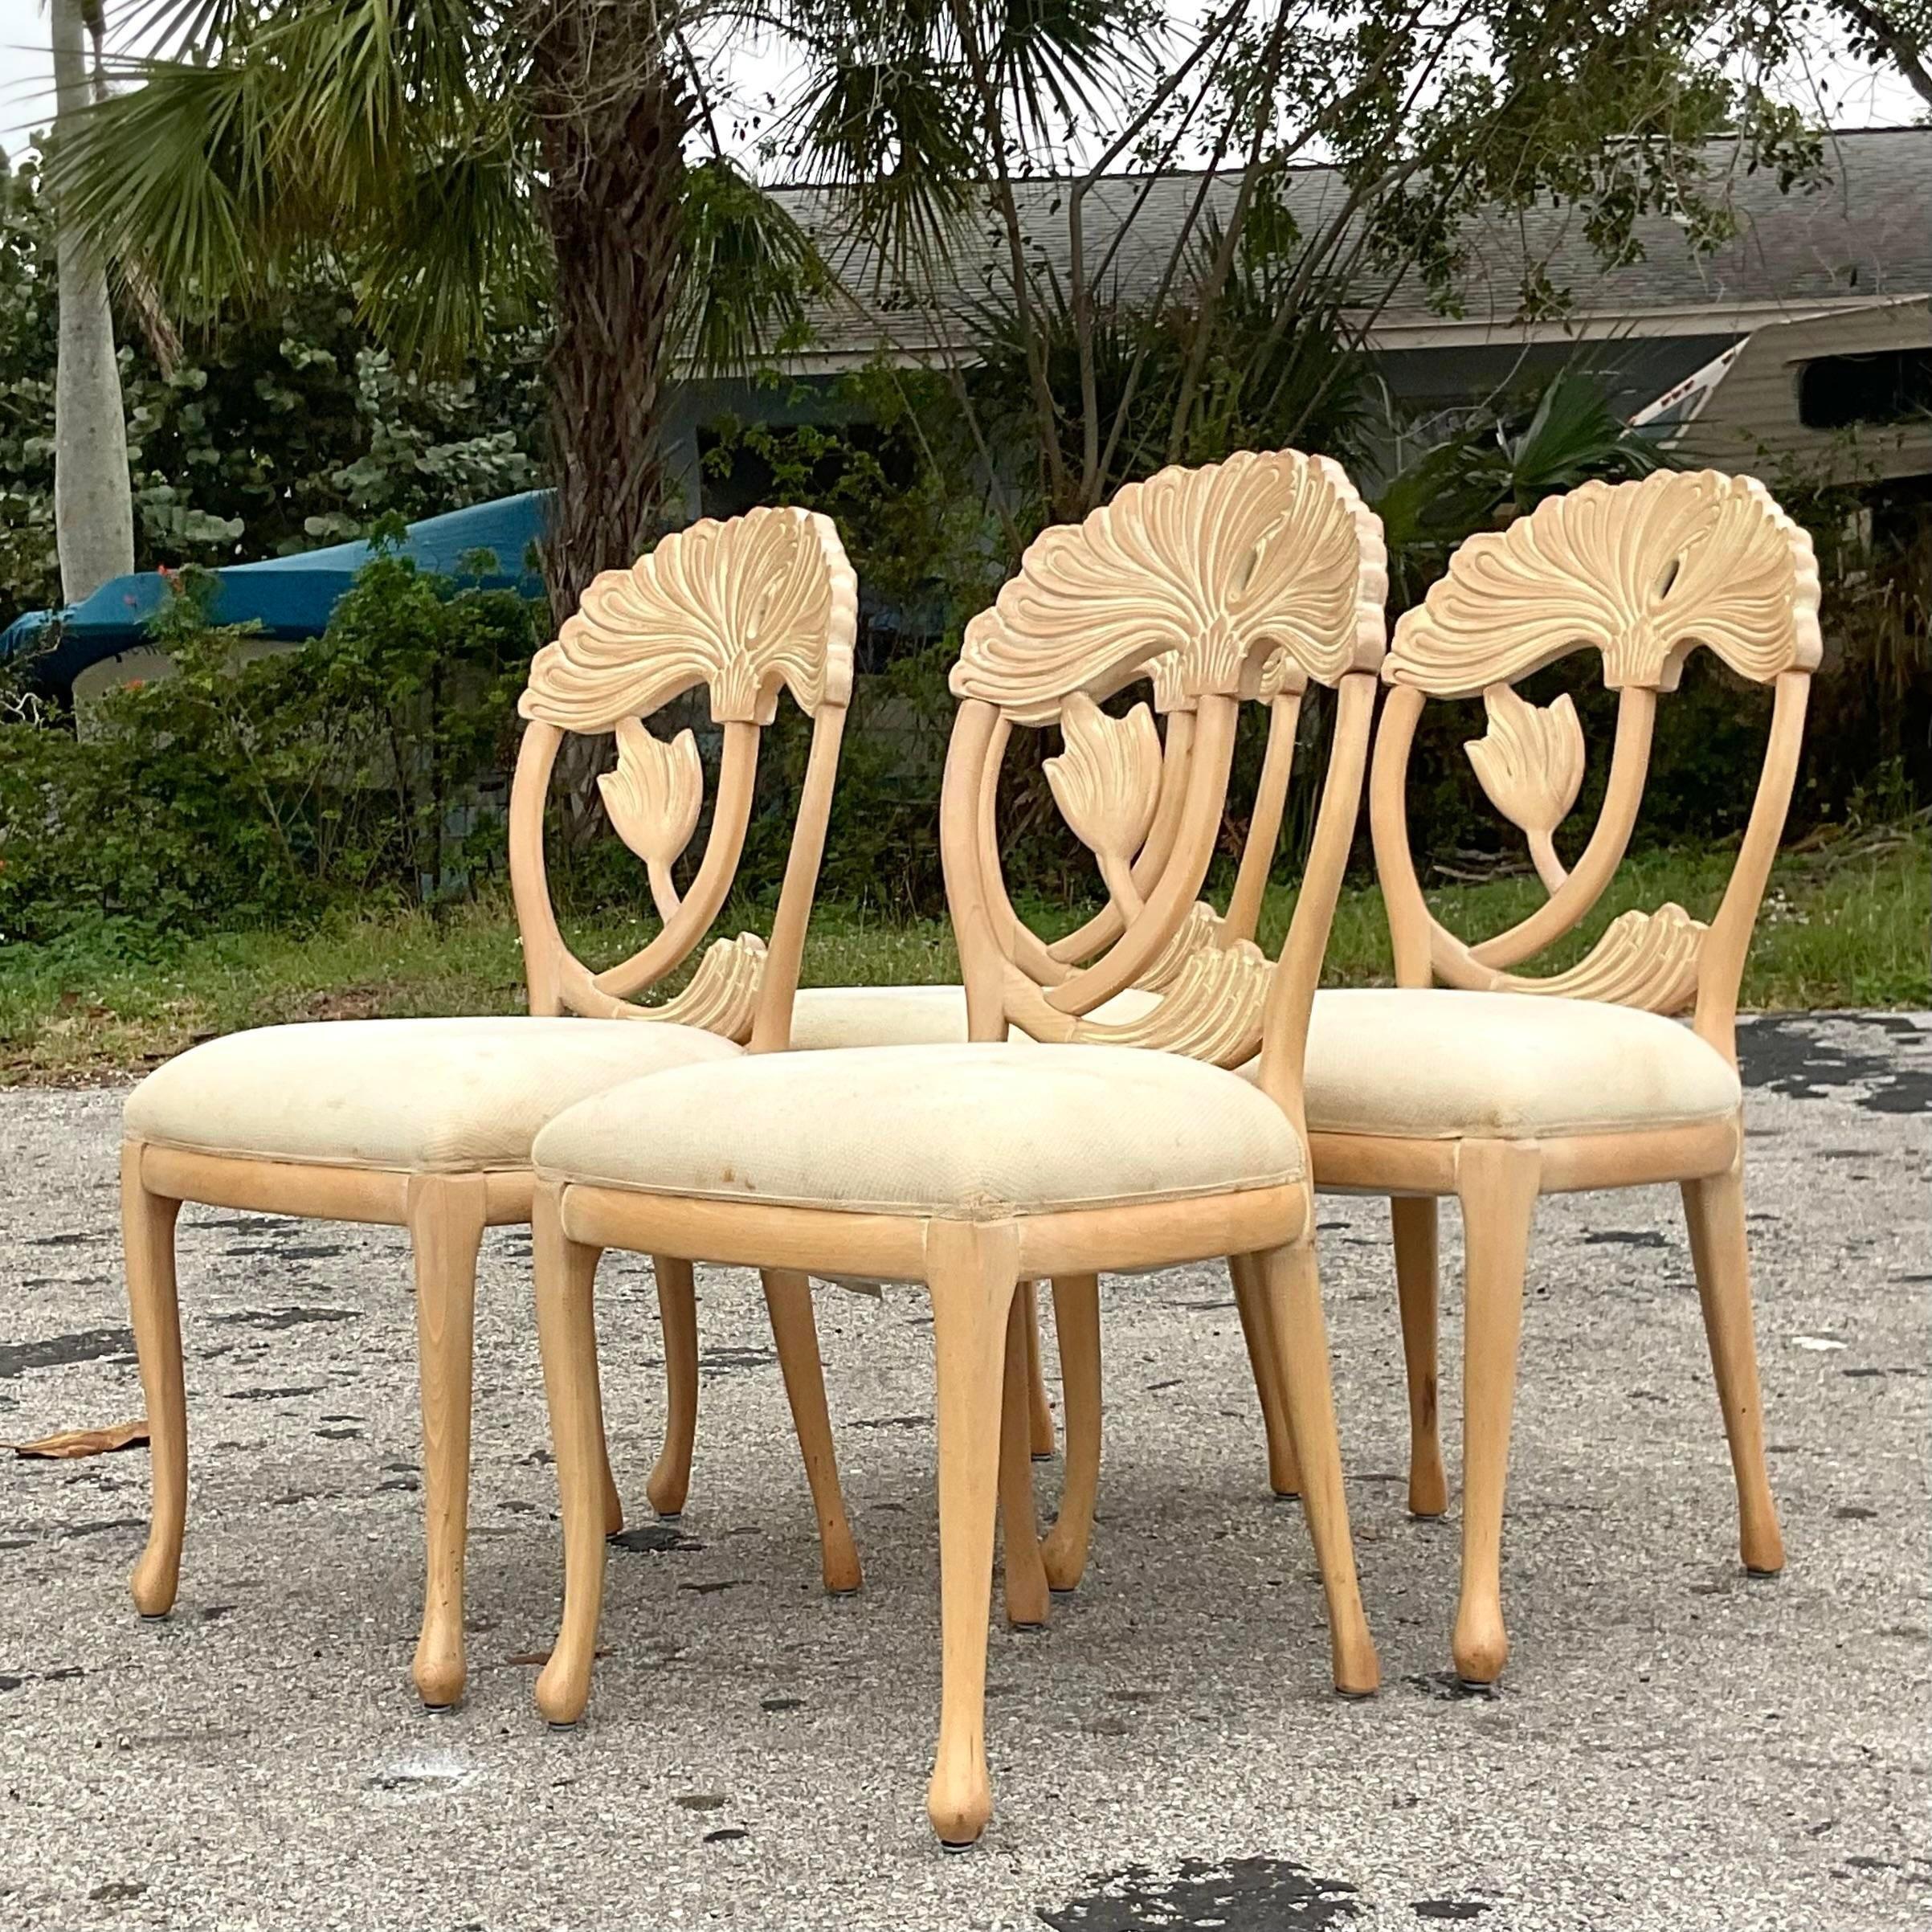 Ein fabelhaftes Vintage Coastal Esstischsockel. Ein schickes geschnitztes Lilienmotiv in gewaschener Ausführung. Passende Stühle auch auf meiner Seite erhältlich. Erworben aus einem Nachlass in Palm Beach.